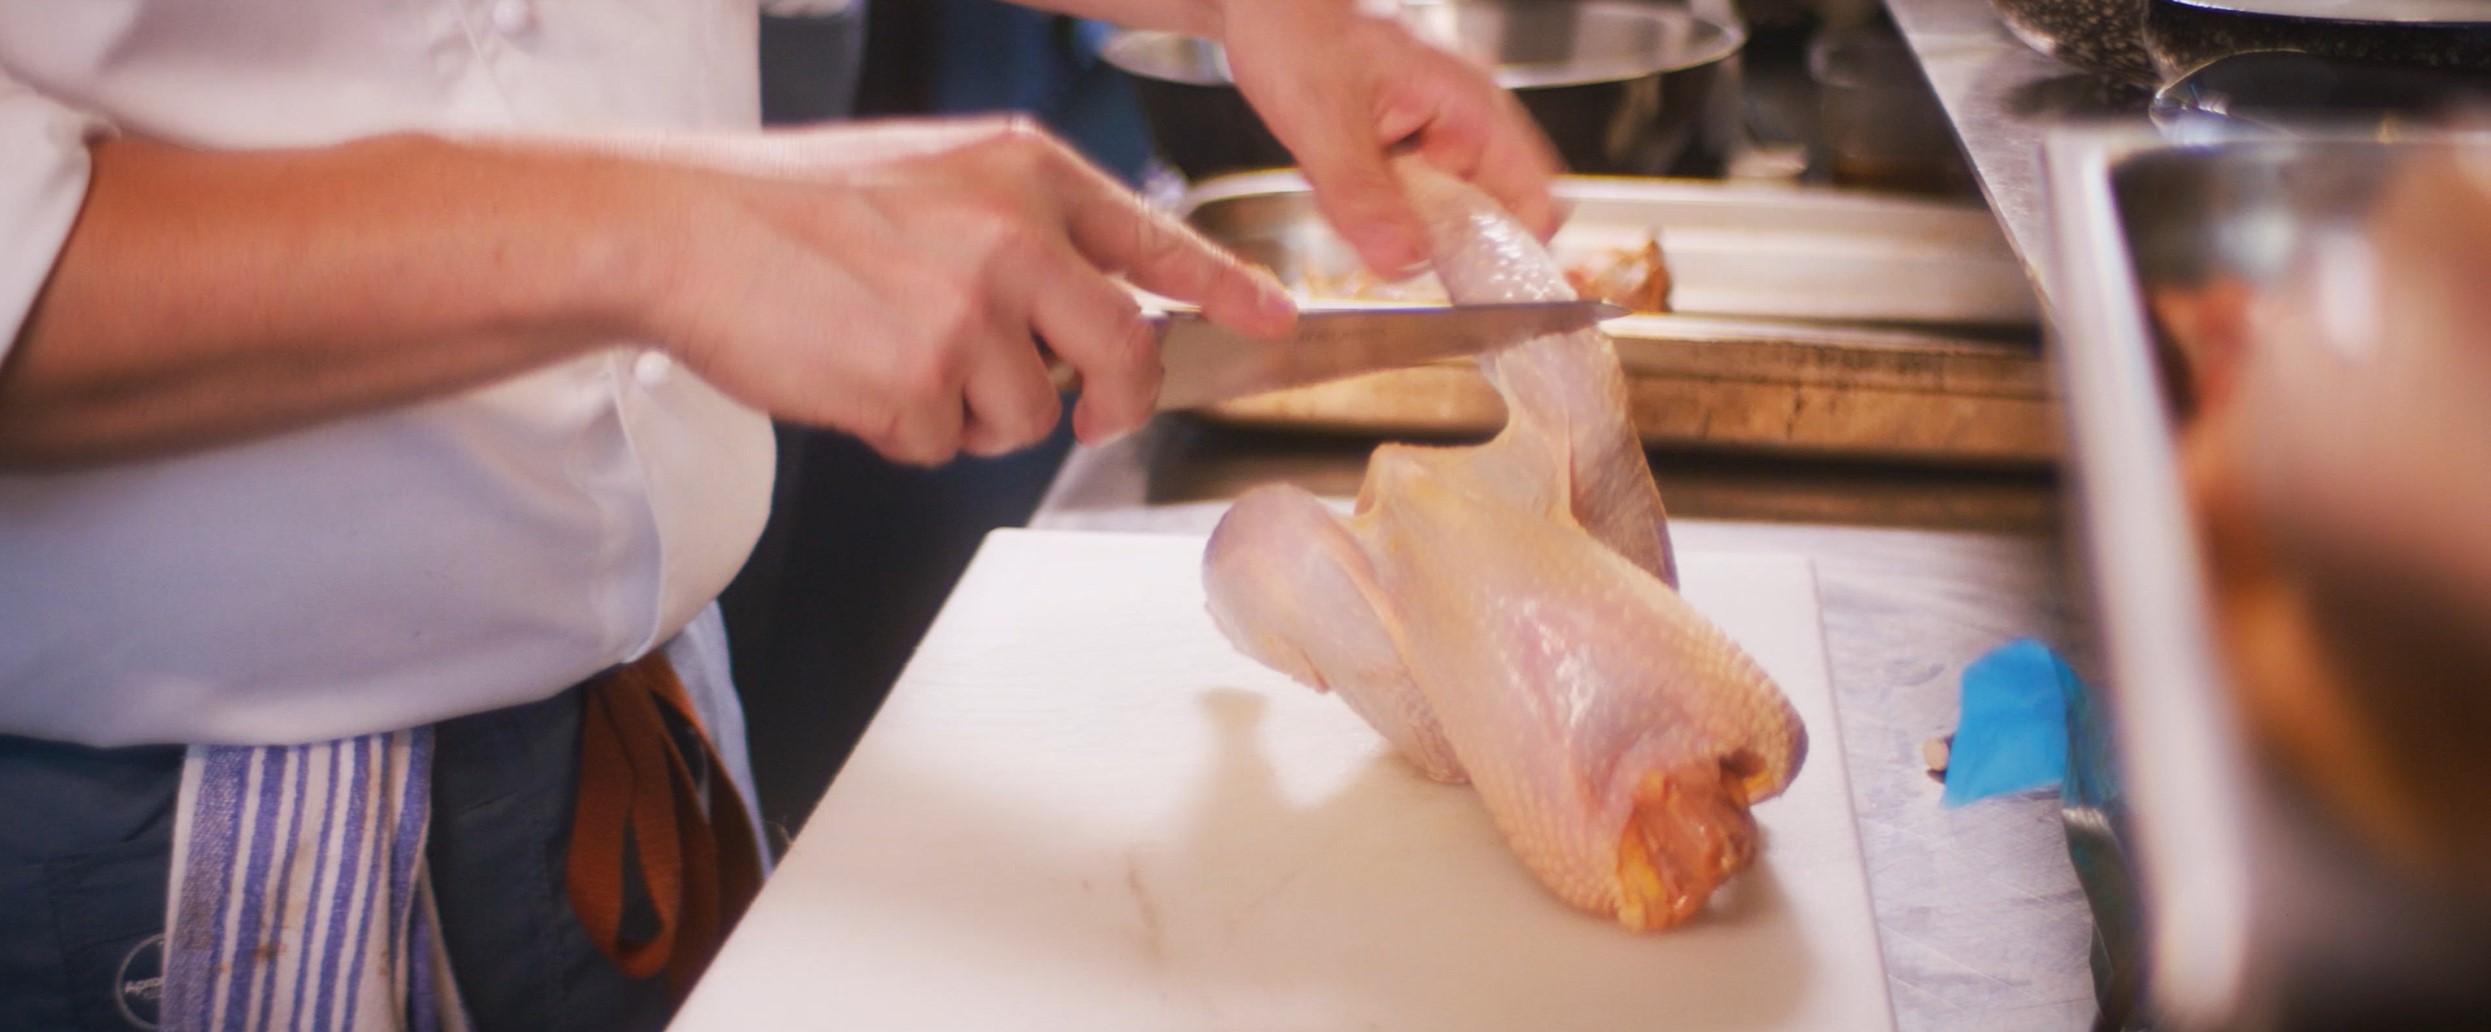 chef cutting chicken